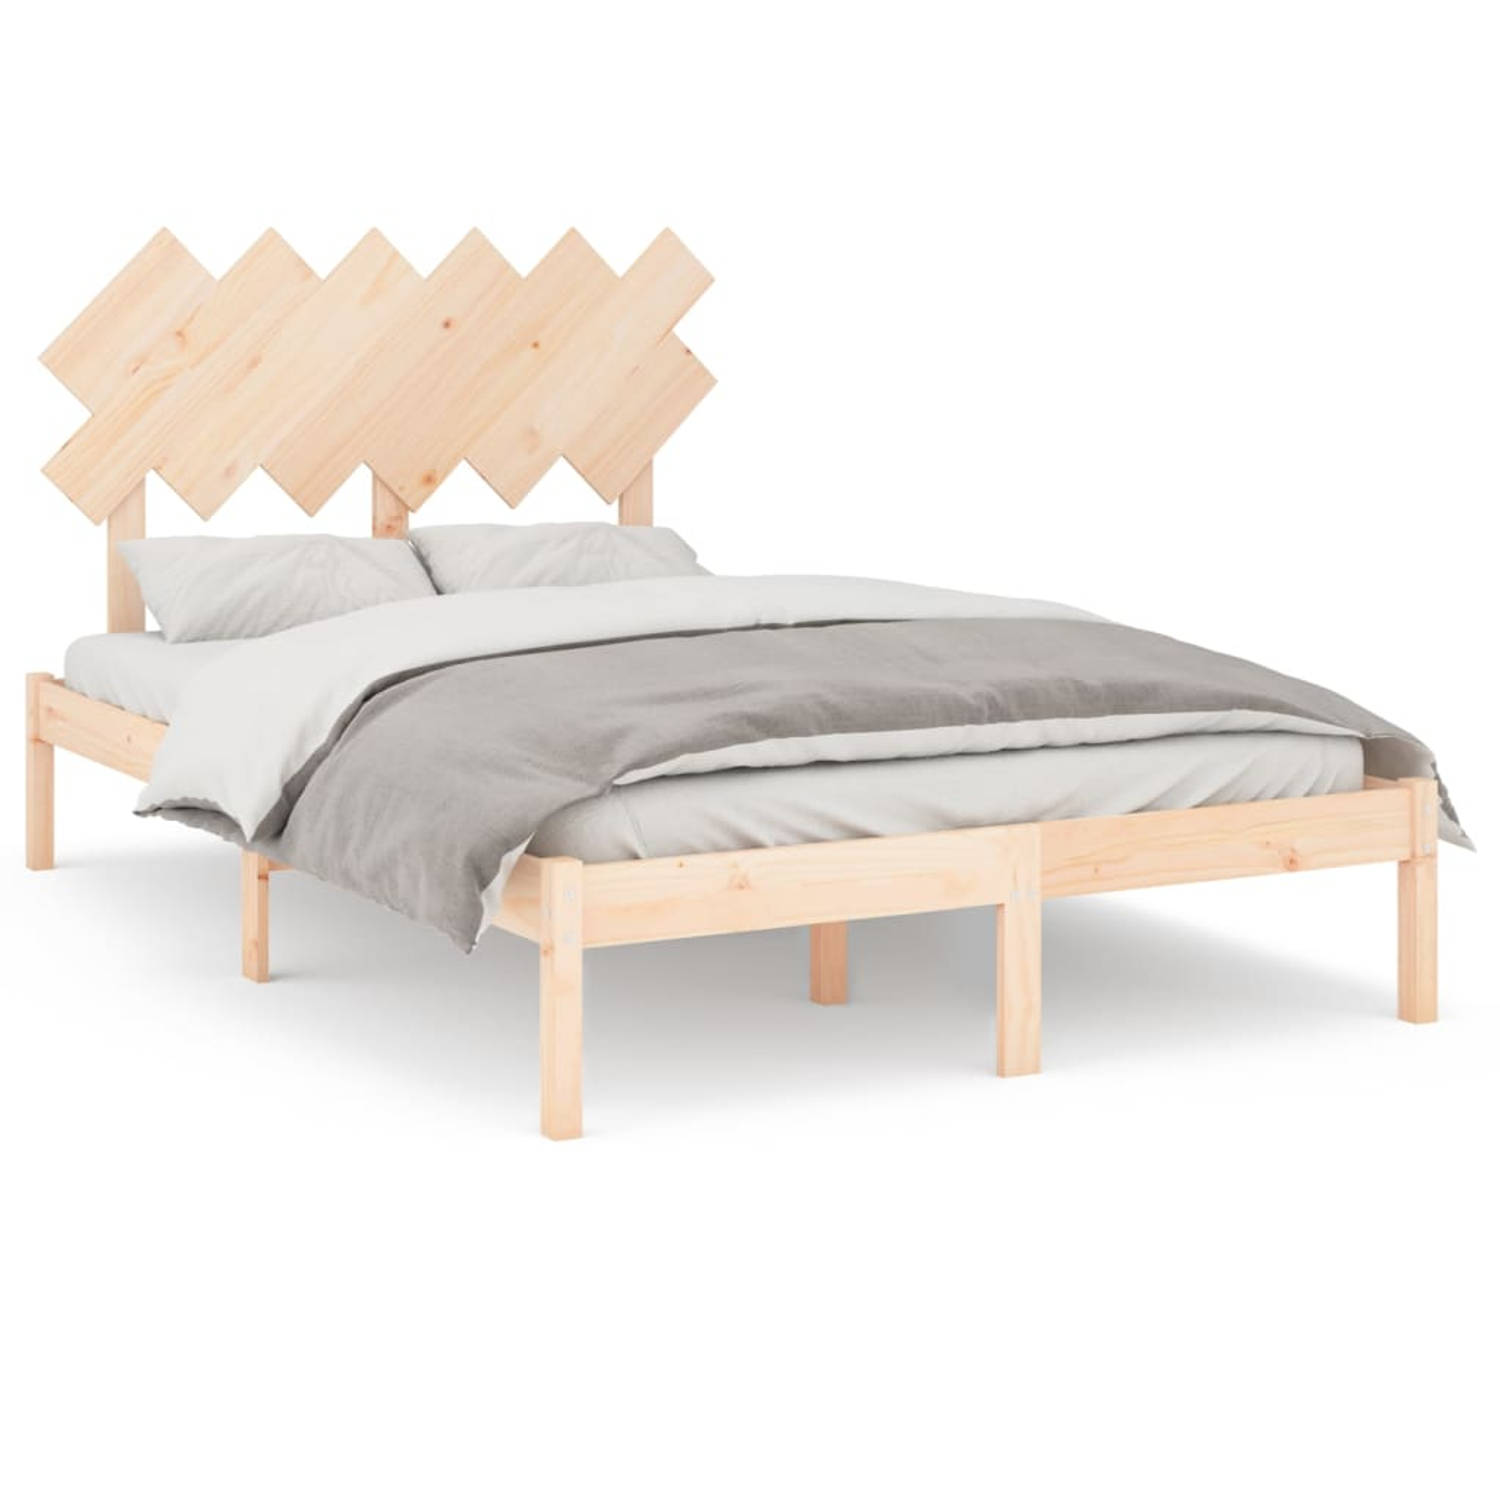 The Living Store Bedframe massief hout 135x190 cm 4FT6 Double - Bedframe - Bedframes - Bed - Bedbodem - Ledikant - Bed Frame - Massief Houten Bedframe - Slaapmeubel - Tweepersoonsb